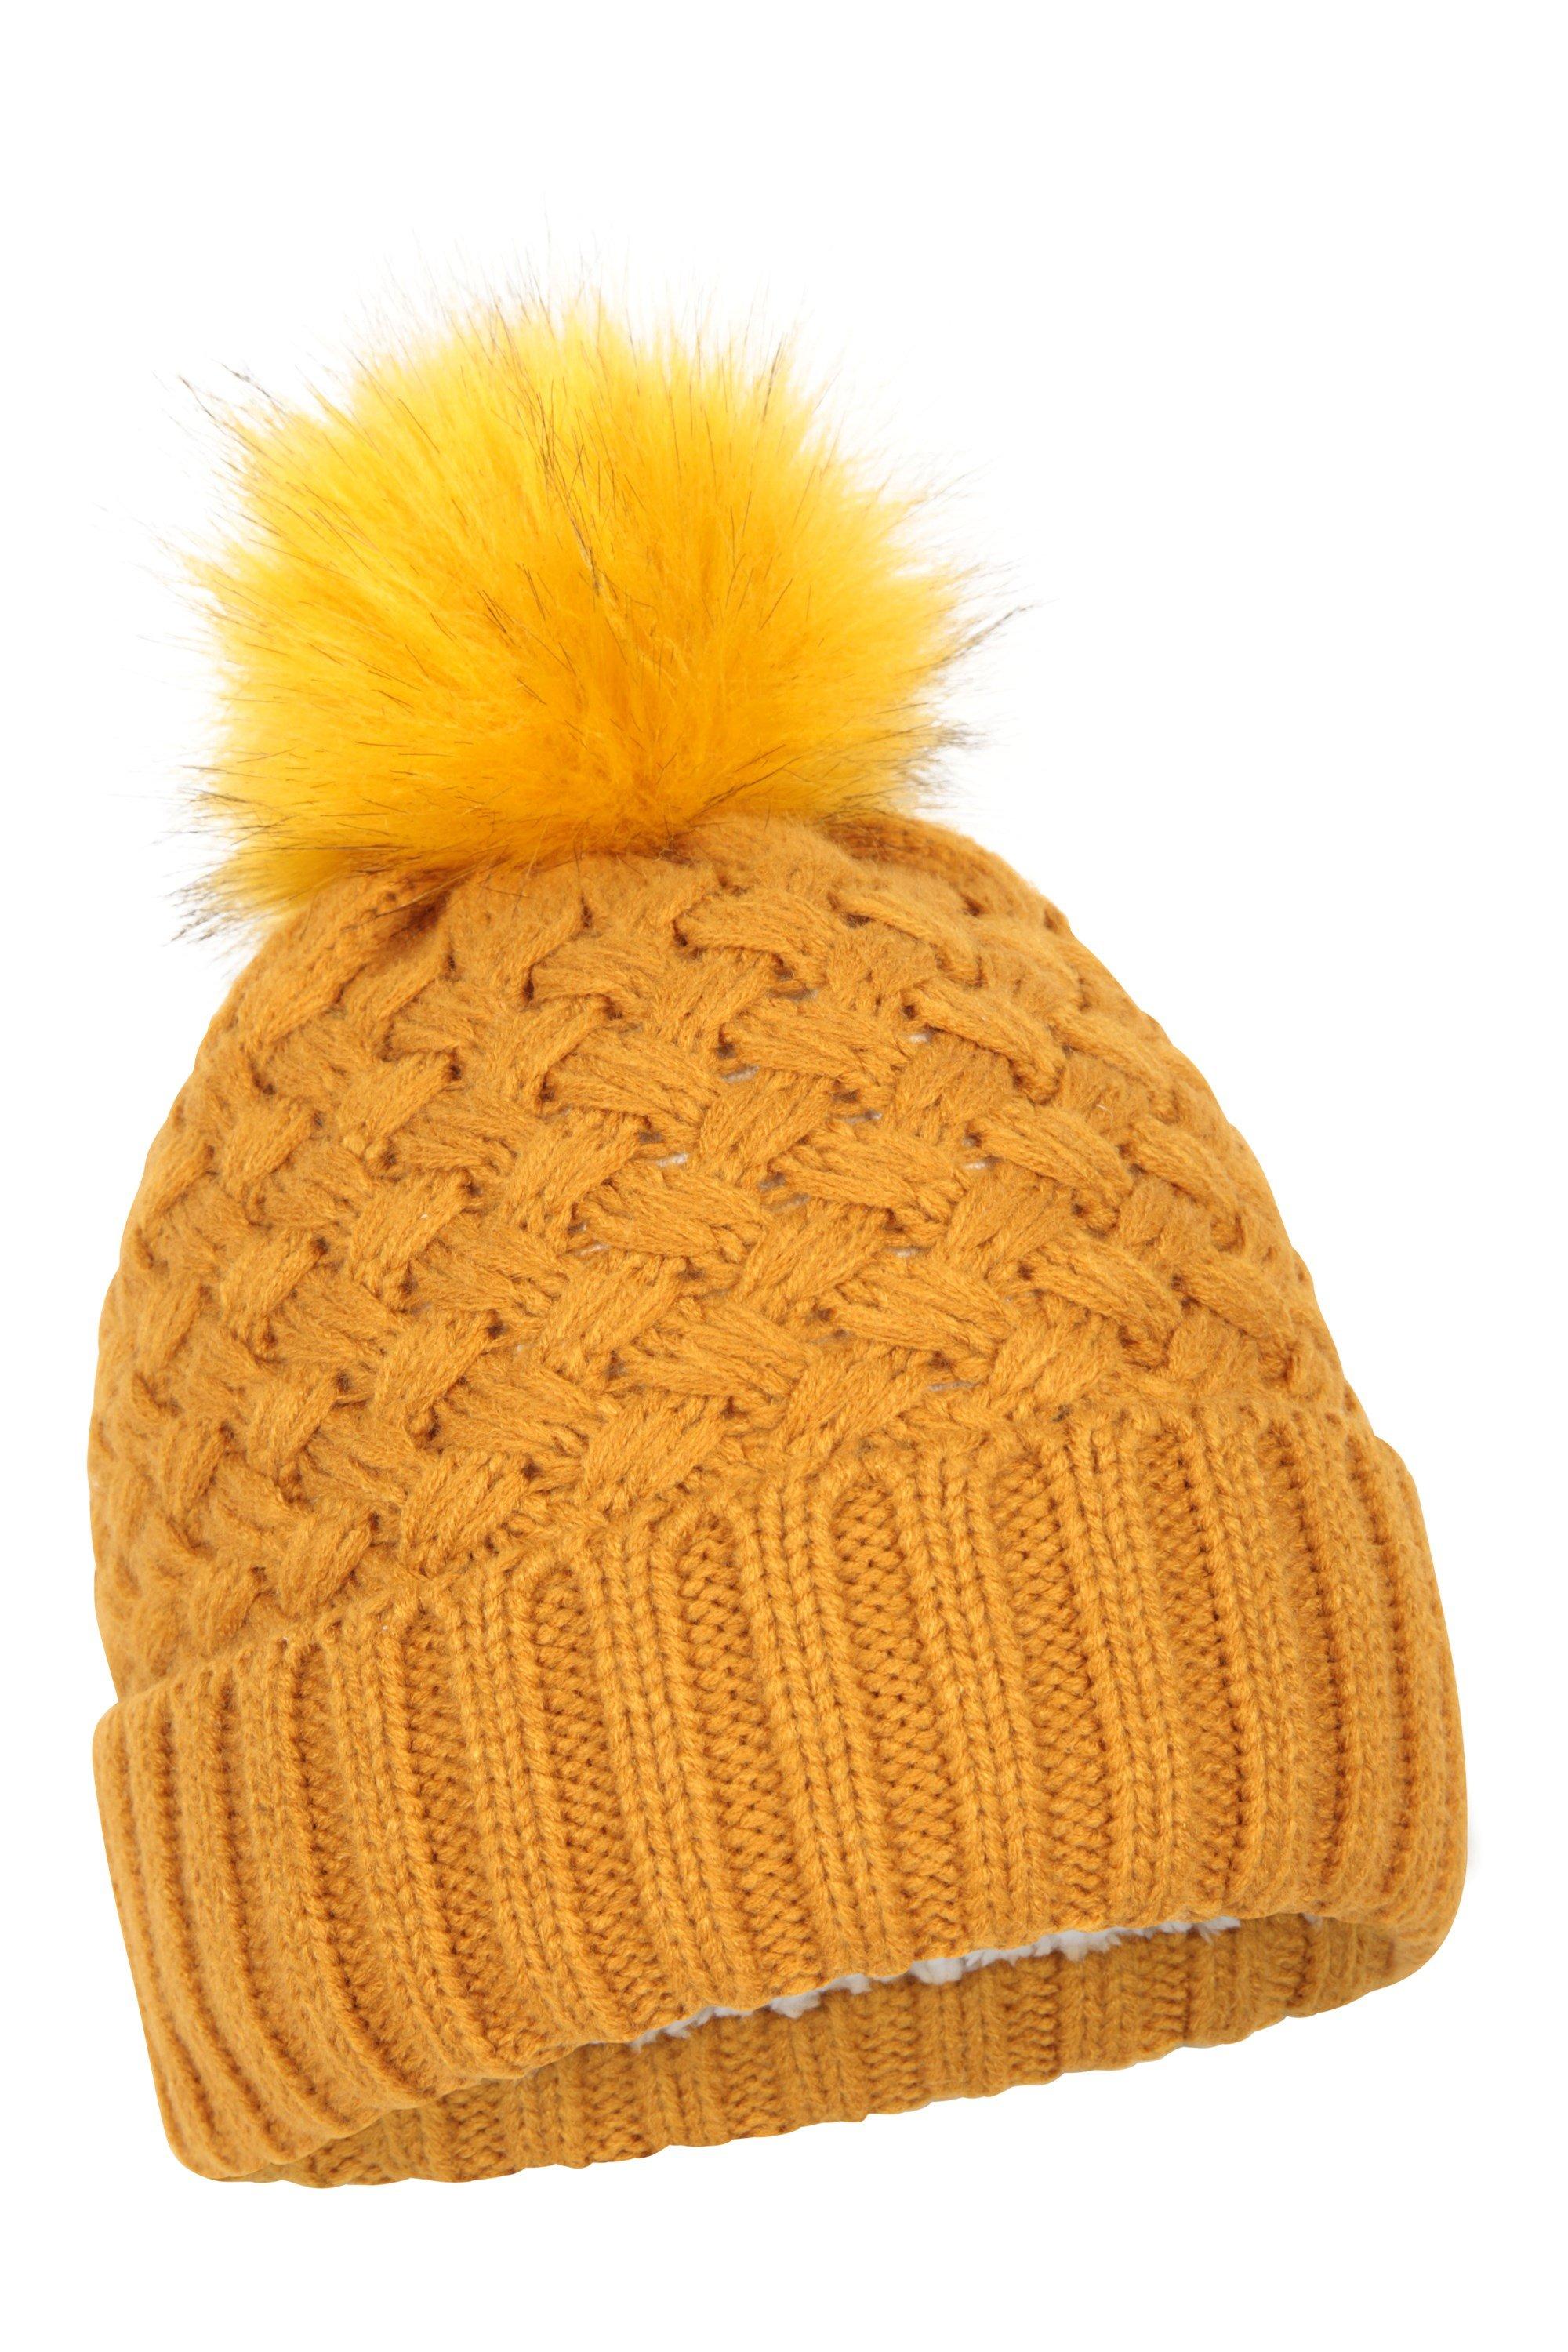 Зимняя лыжная шапка-бини с помпоном на меховой подкладке Mountain Warehouse, желтый шапка бини женская крупной вязки цвет – серый